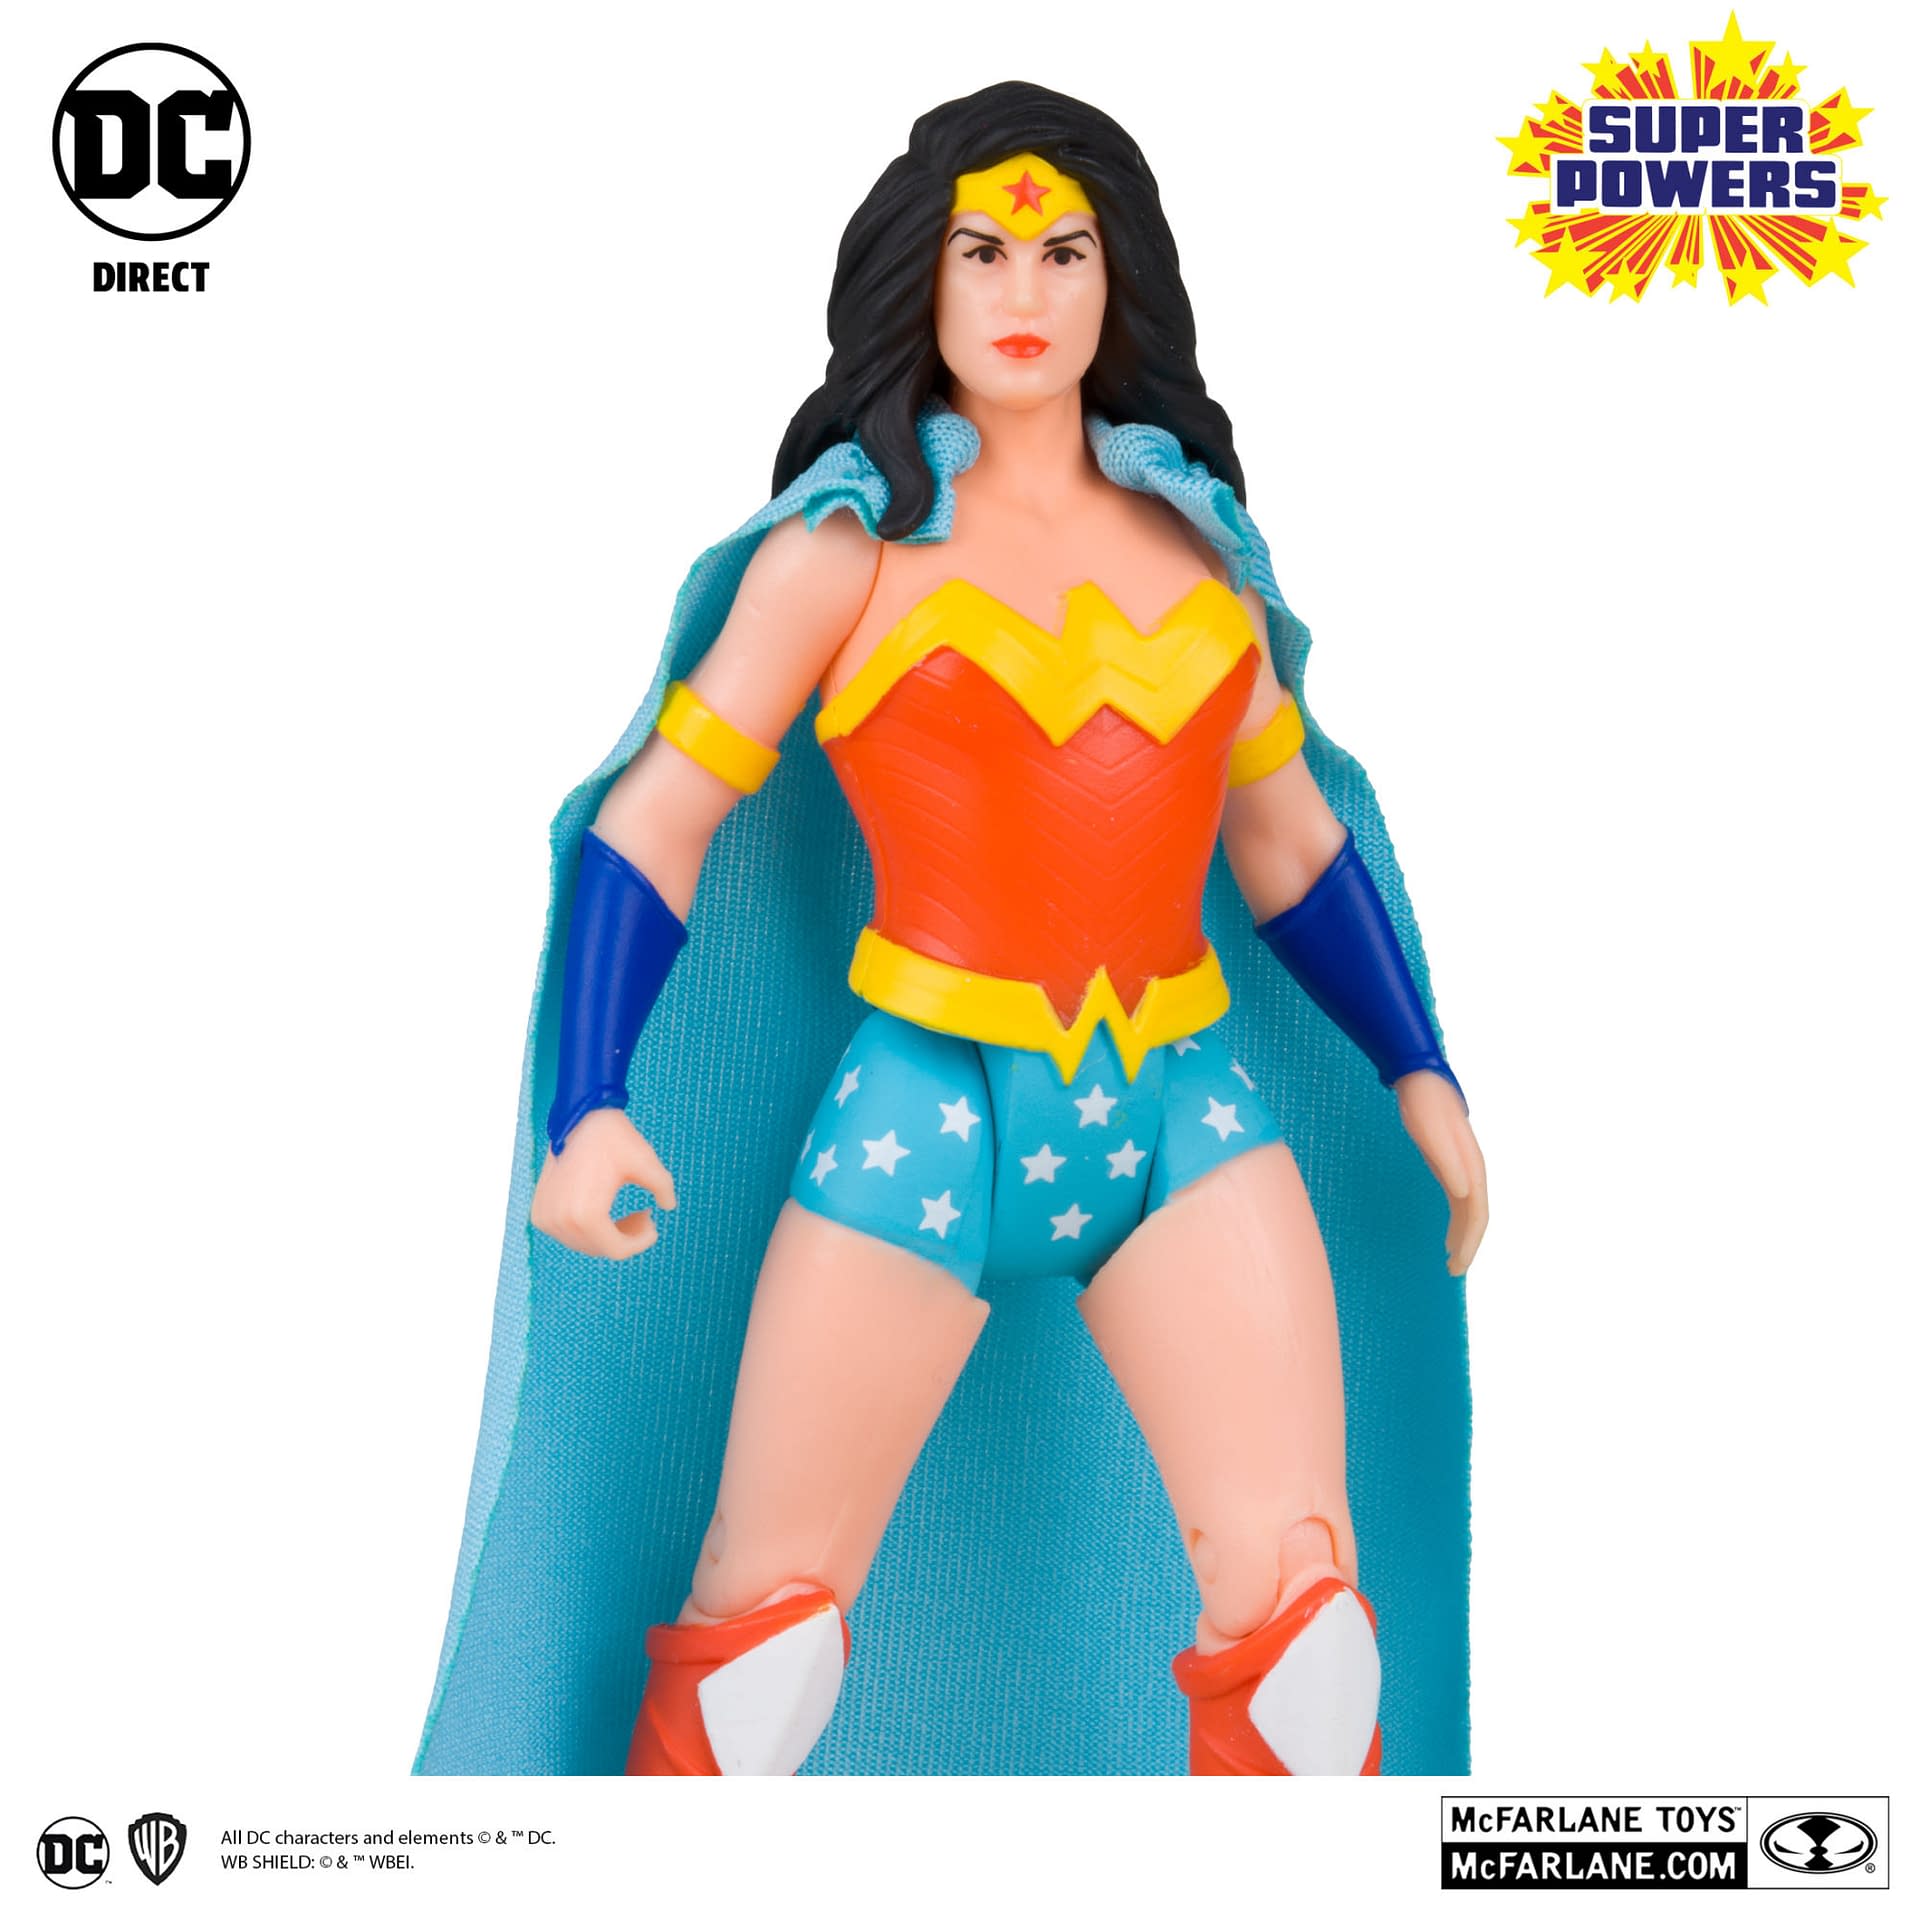 McFarlane Toys Unveils DC Comics Super Powers Wave 4 Retro Figures